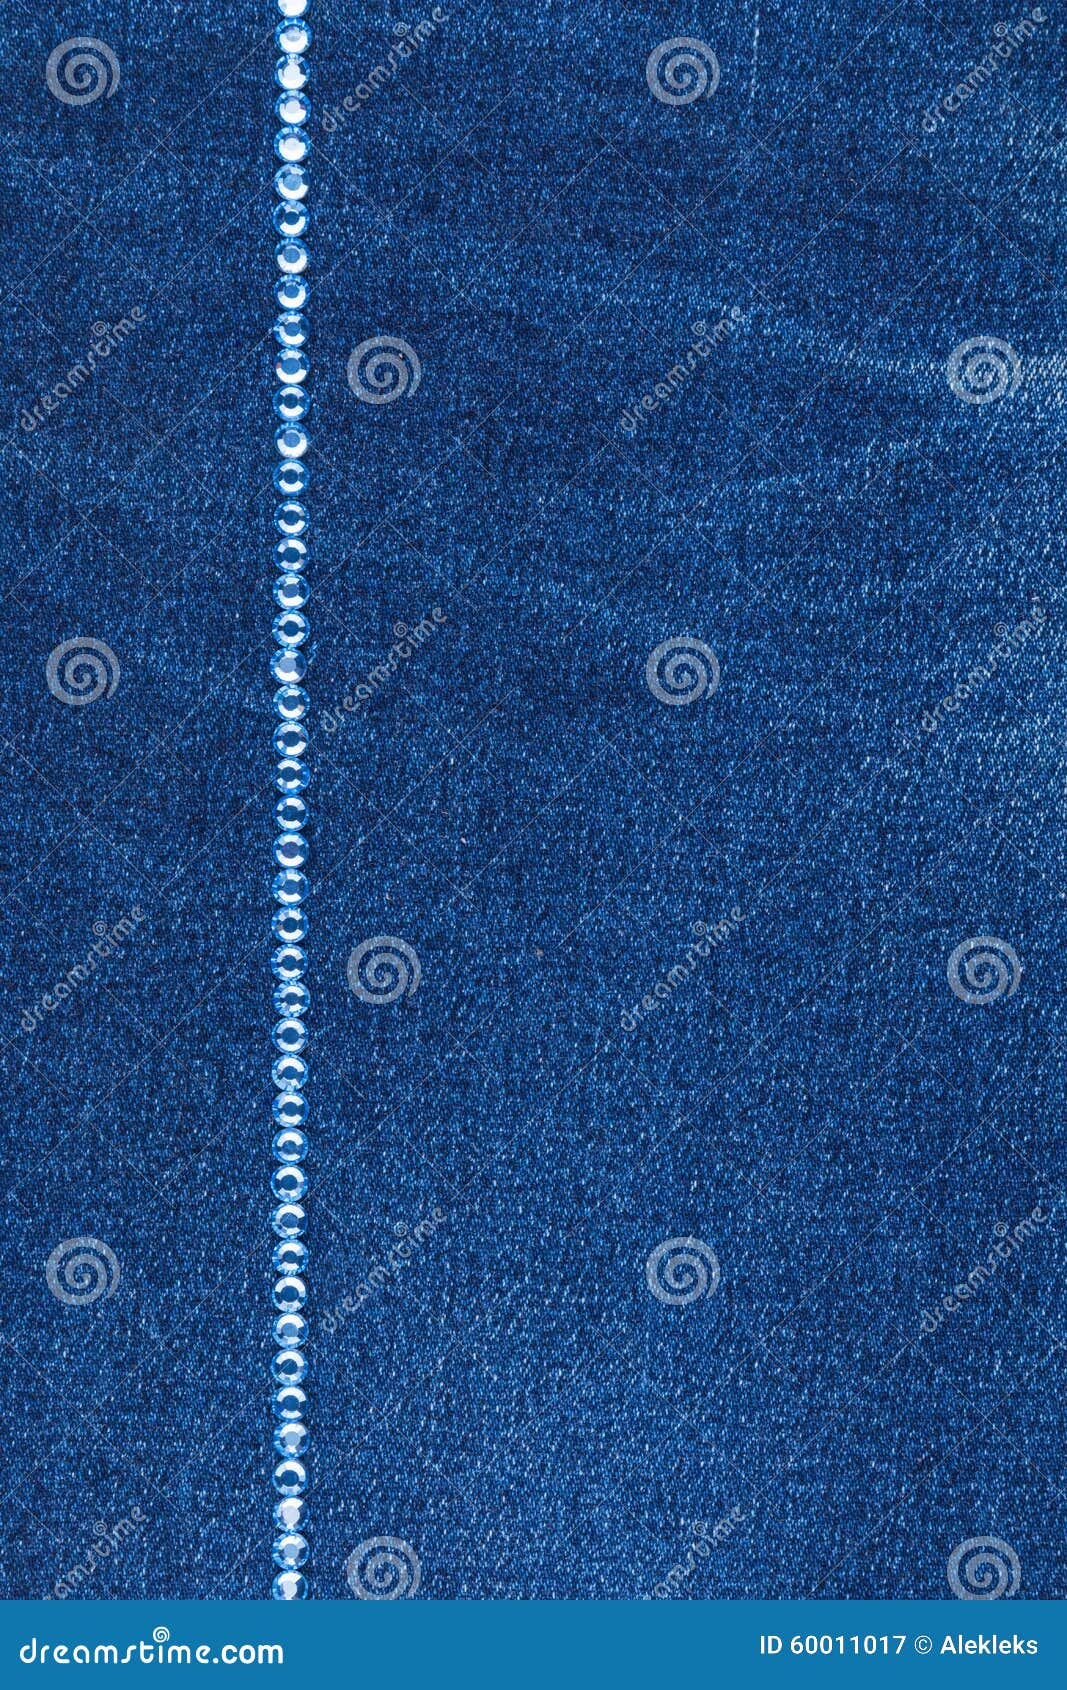 Fashionable Background, Jeans and Blue Rhinestones Stock Image - Image ...